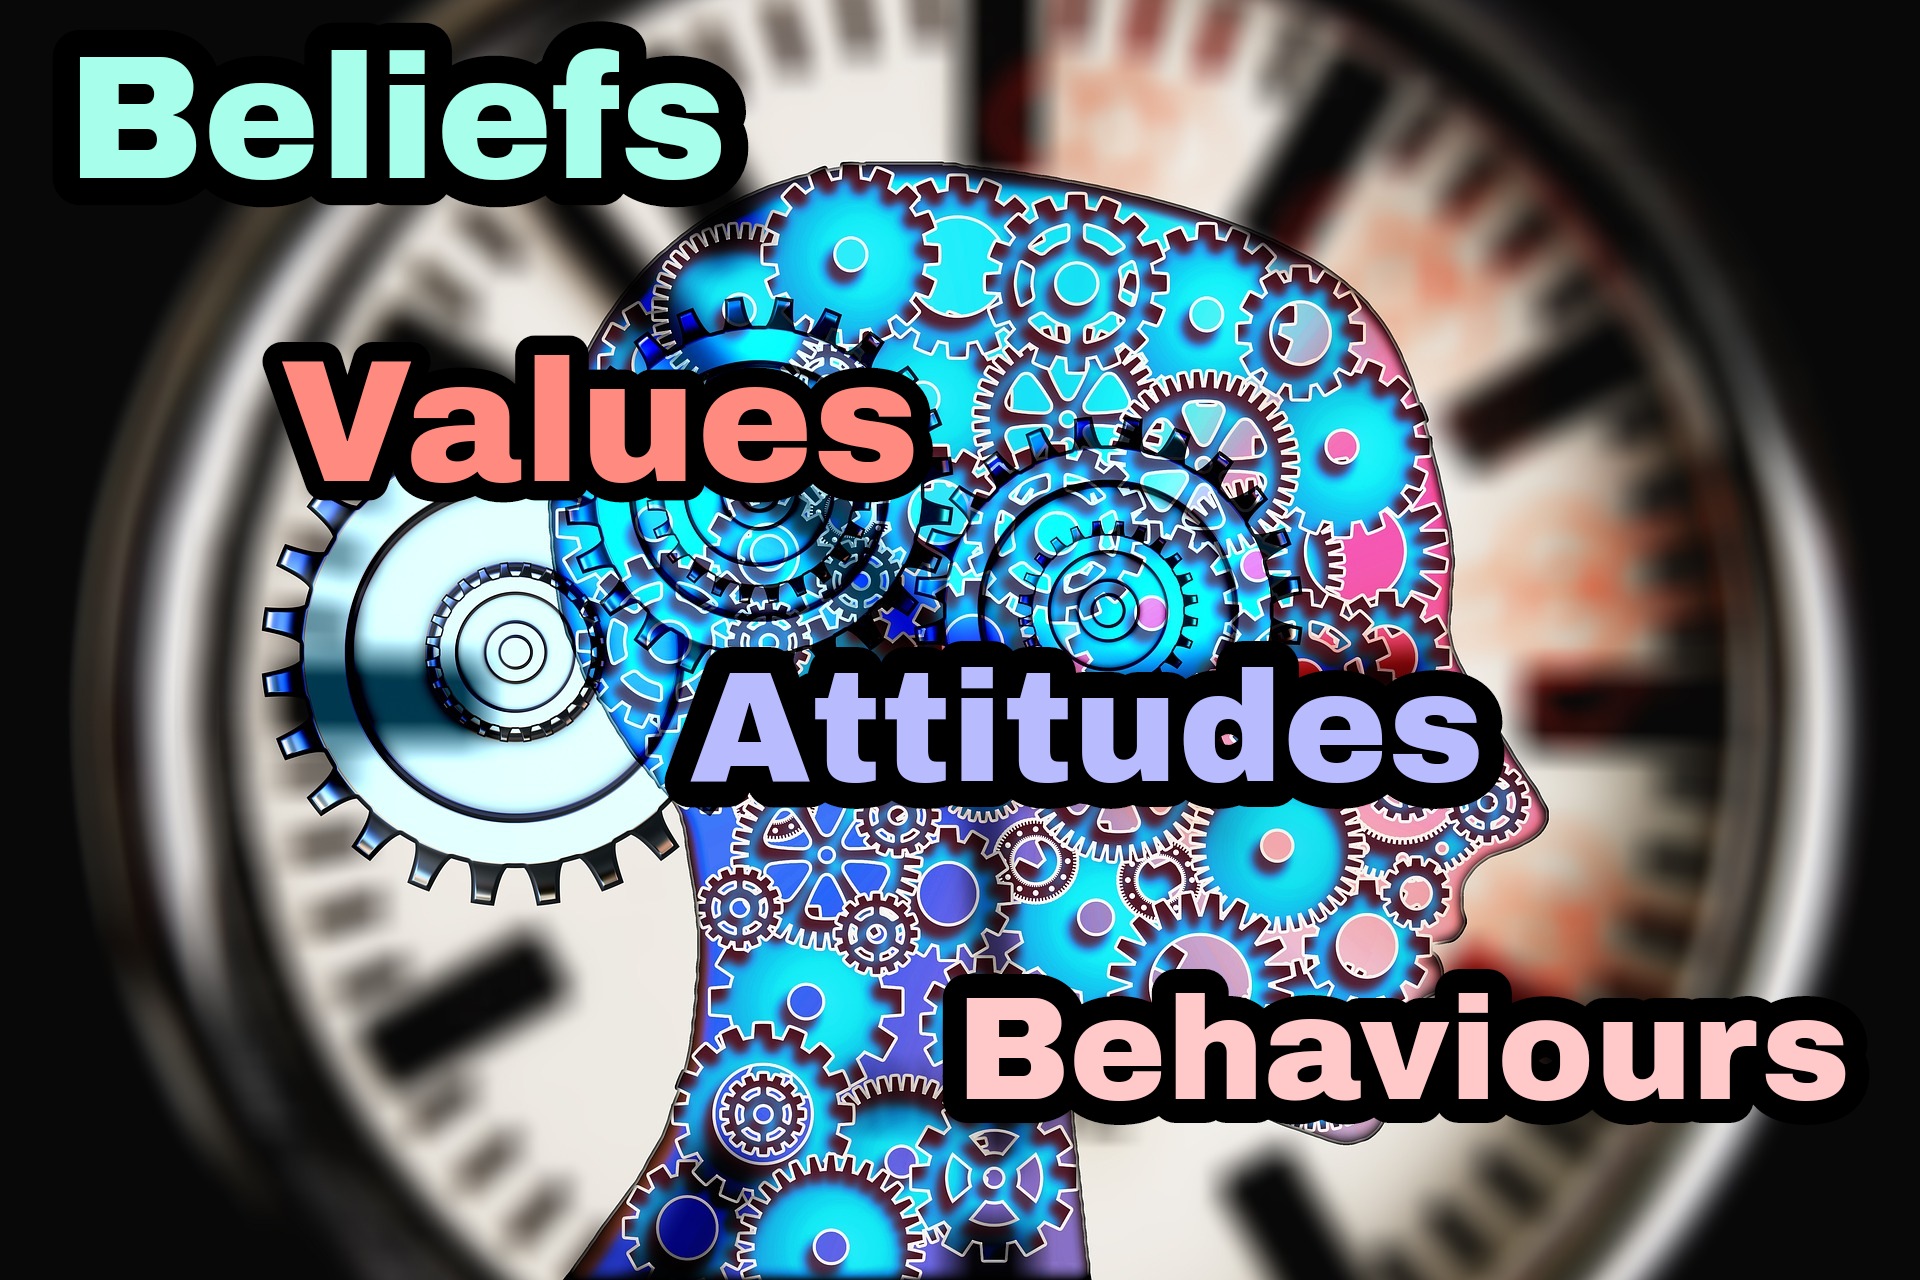 Relationships between Beliefs, Values, Attitudes, and Behaviours